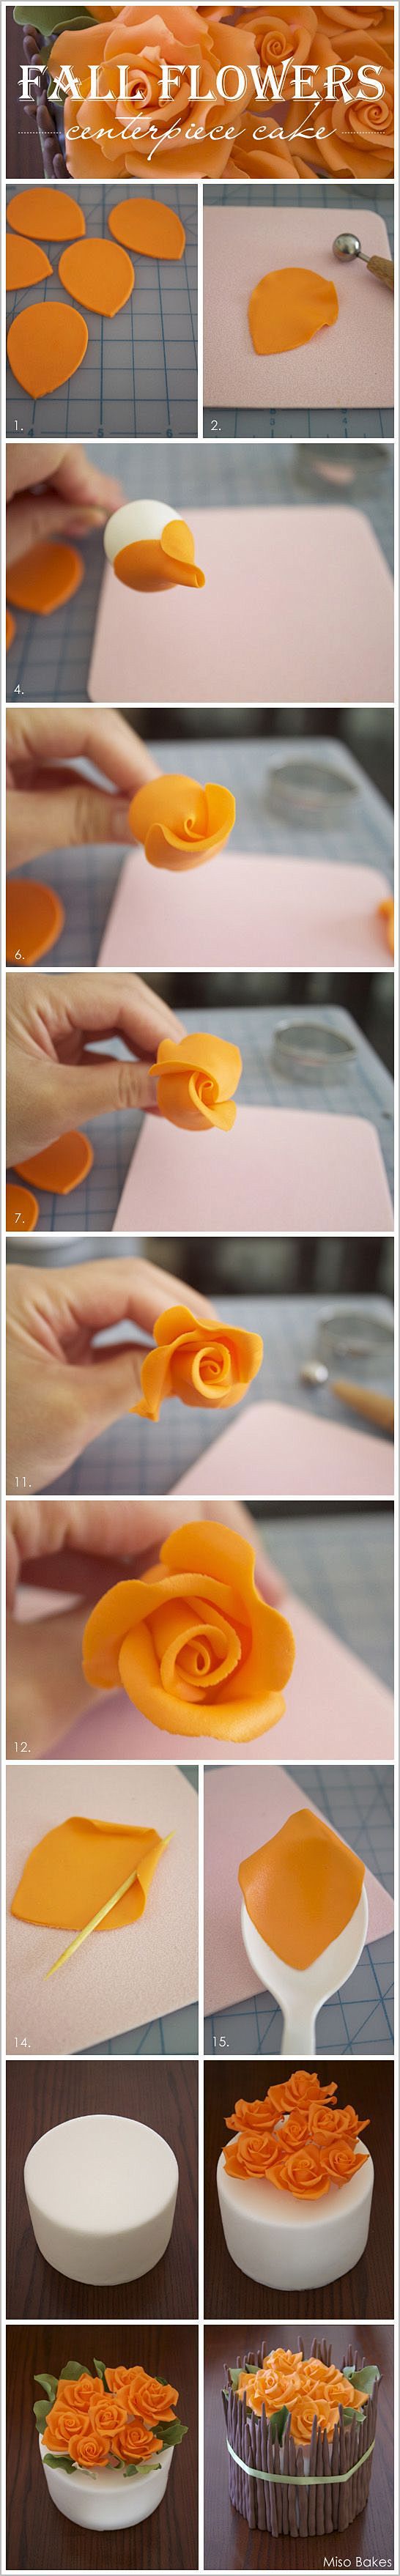 逼真的软陶粘土花朵花卉花盆手工制作